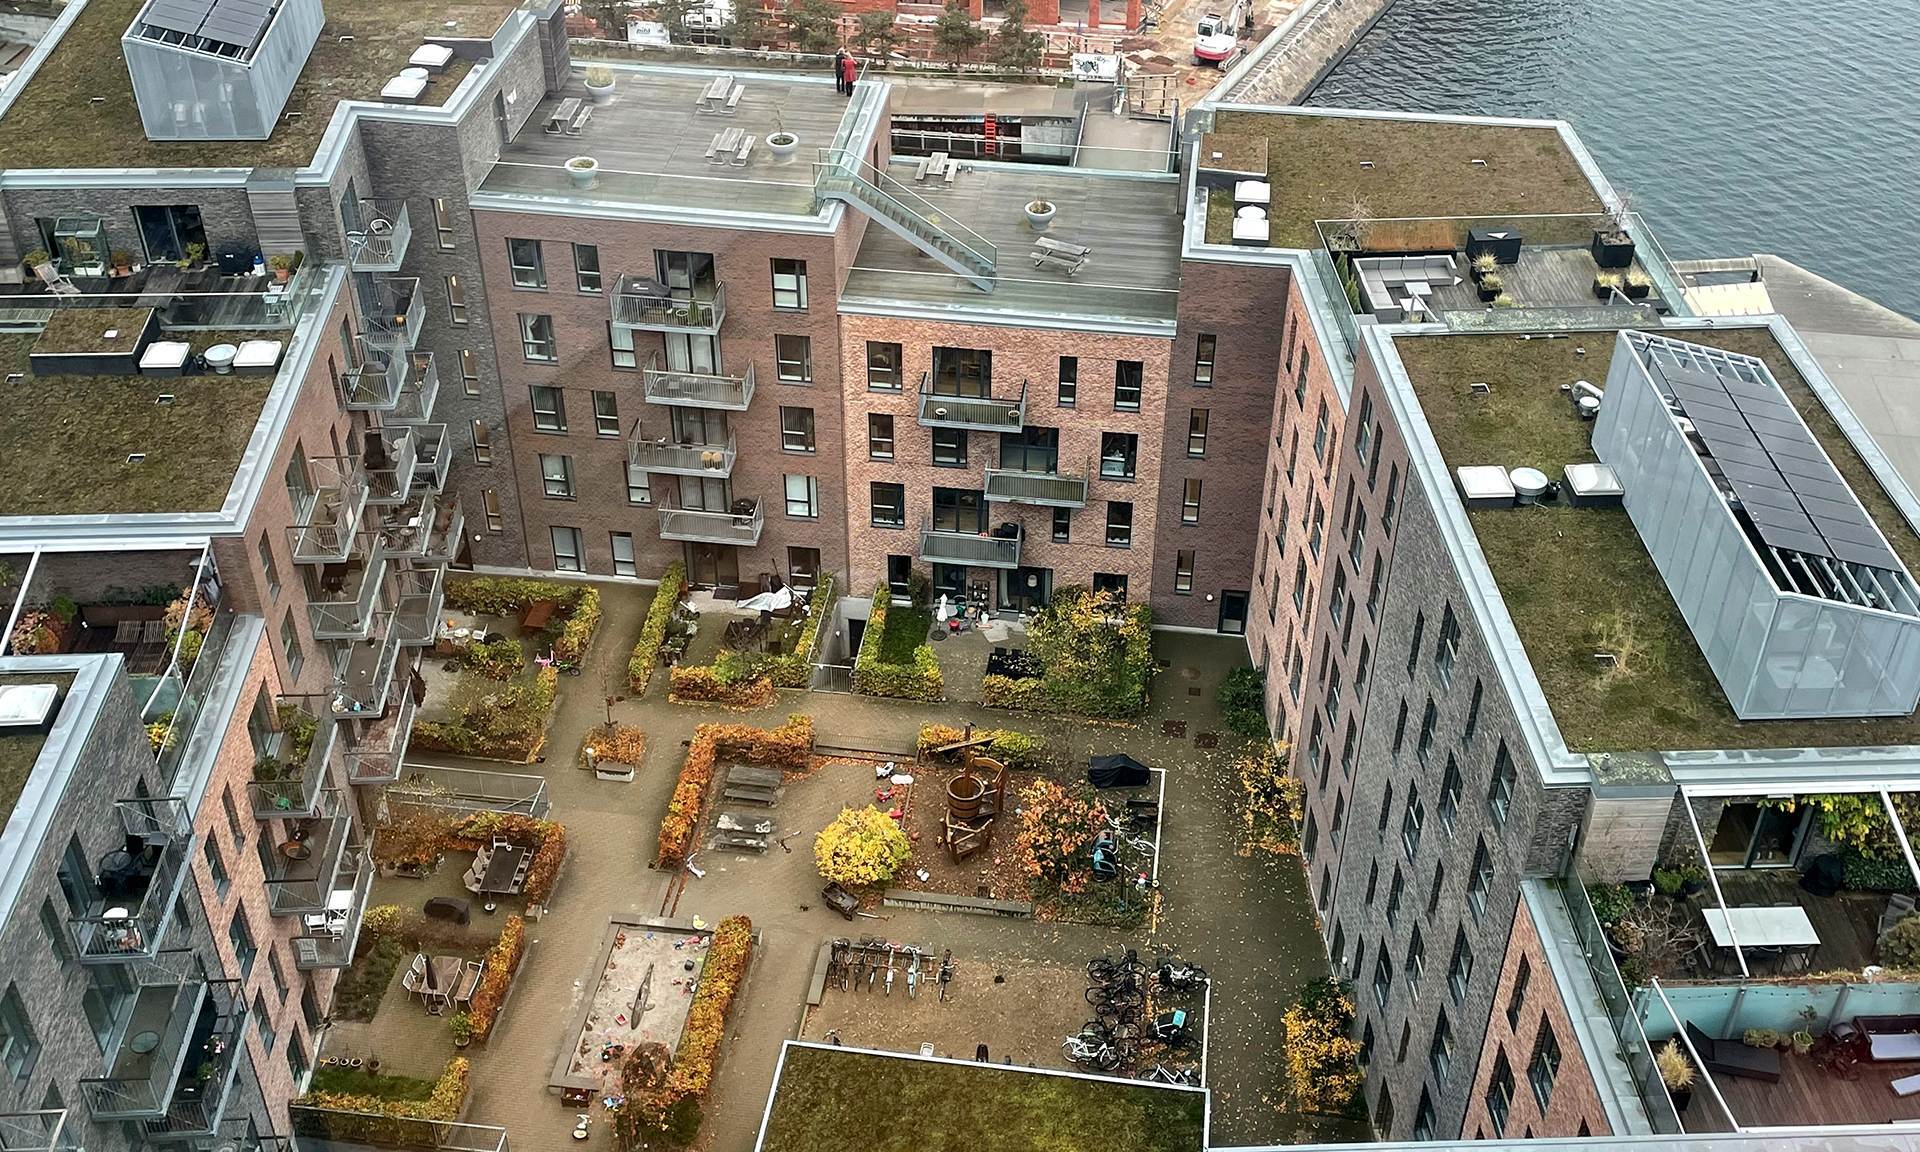 Blick in eine typische Hofsituation im Stadtteil Nordhavn